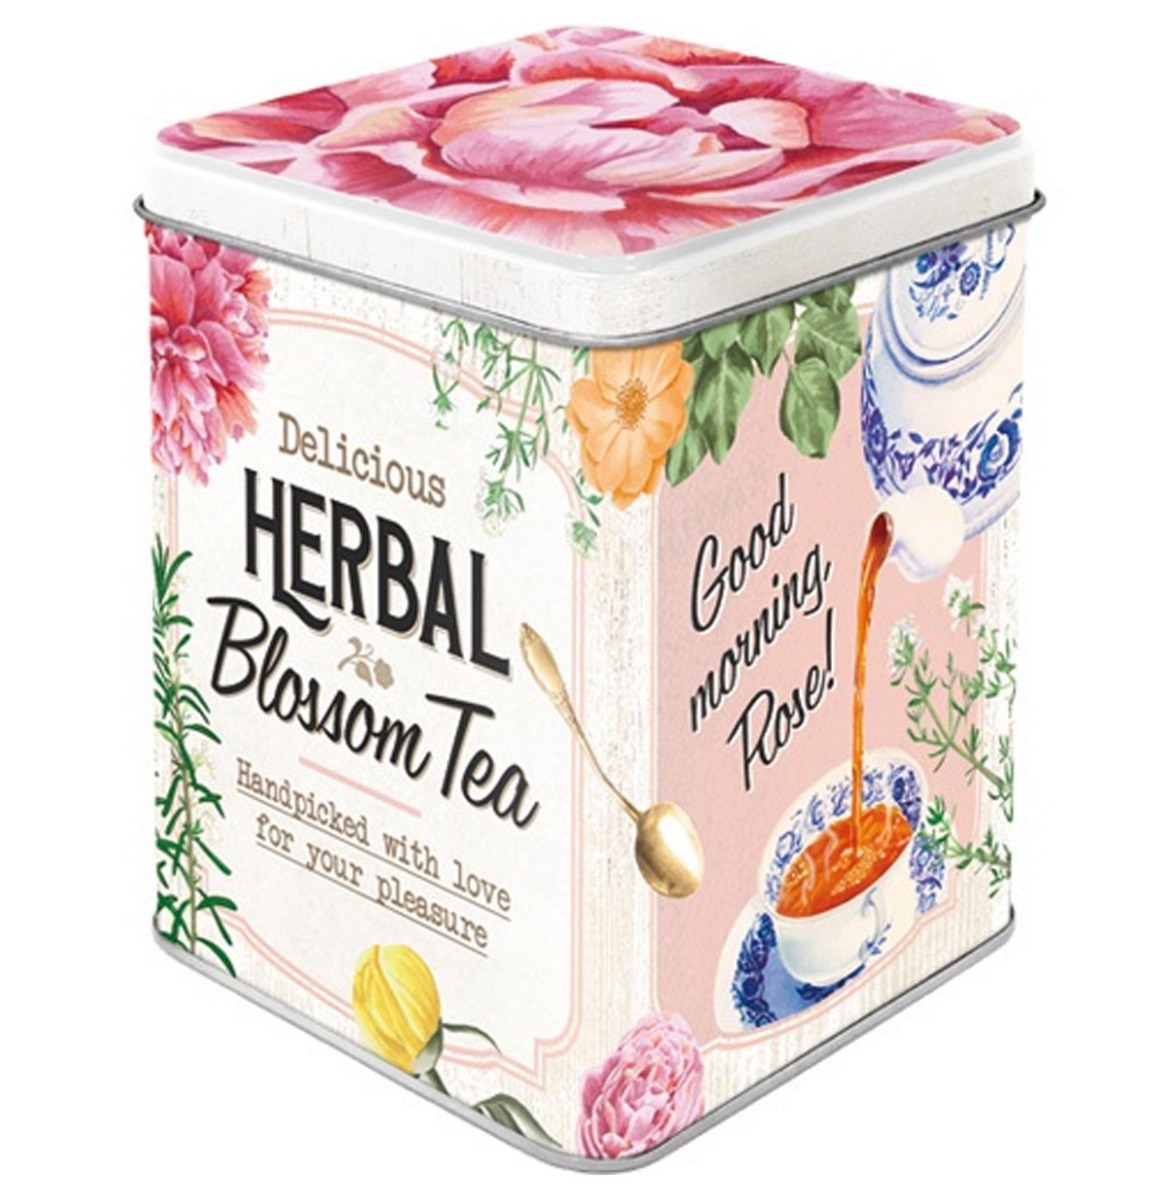 Delicious Herbal Blossom Tea Metalen Theedoosje